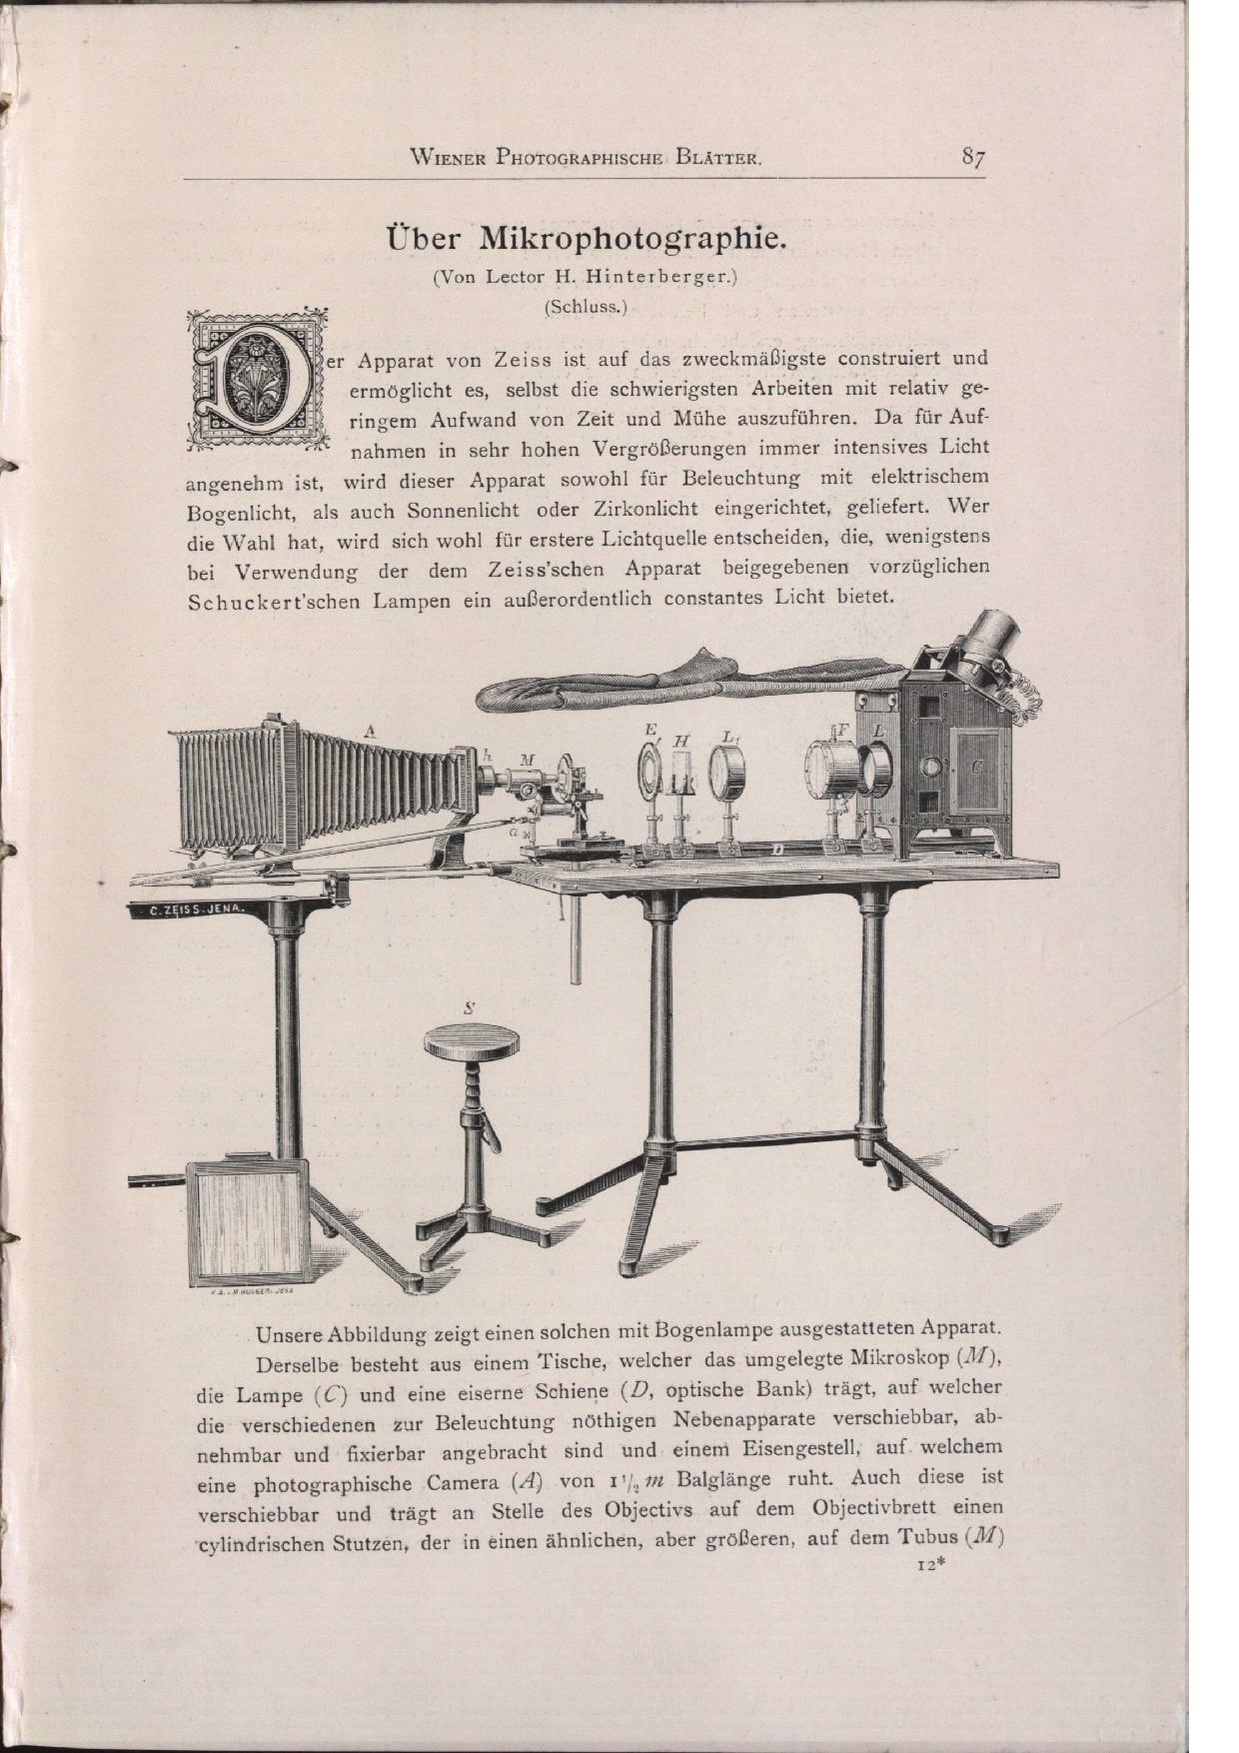 Hinterberger, Hugo, 1898, Über Mikrophotographie (Teil 2, "Schluss"), Beitrag in "Wiener Photographische Blätter", 1898, V. Jahrgang, S. 87ff.